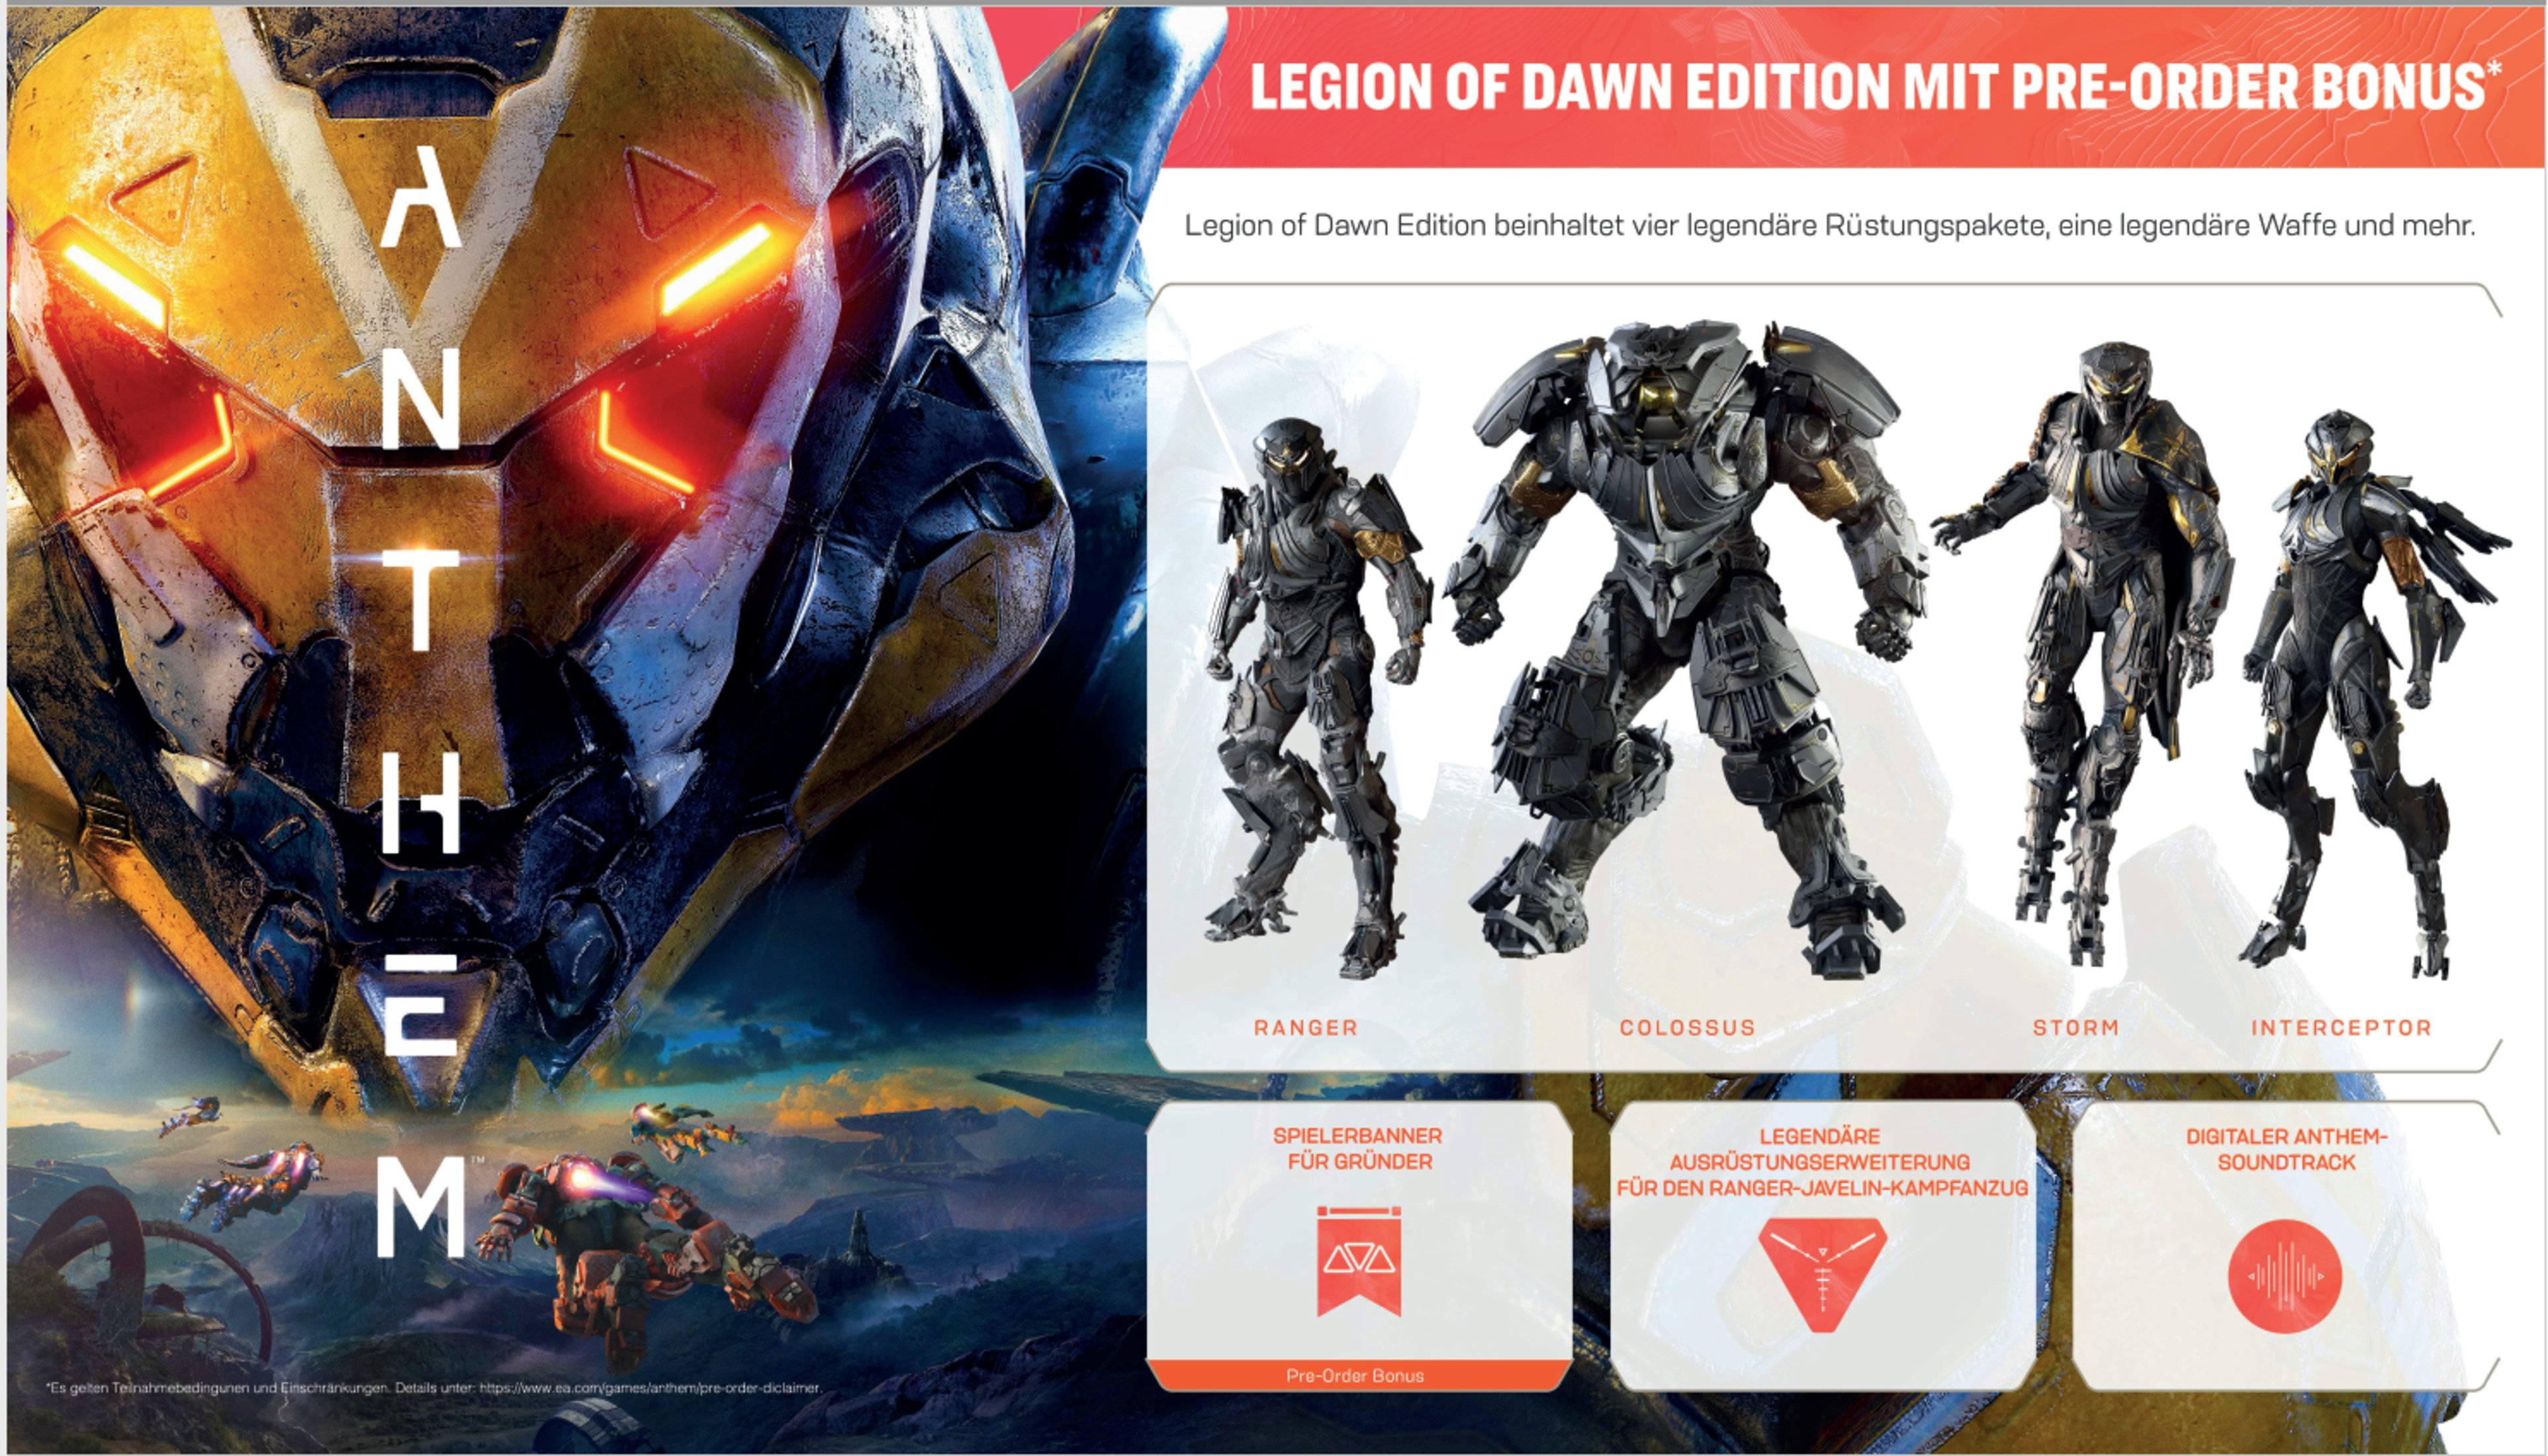 [Xbox Dawn - of Edition One] Anthem Legion